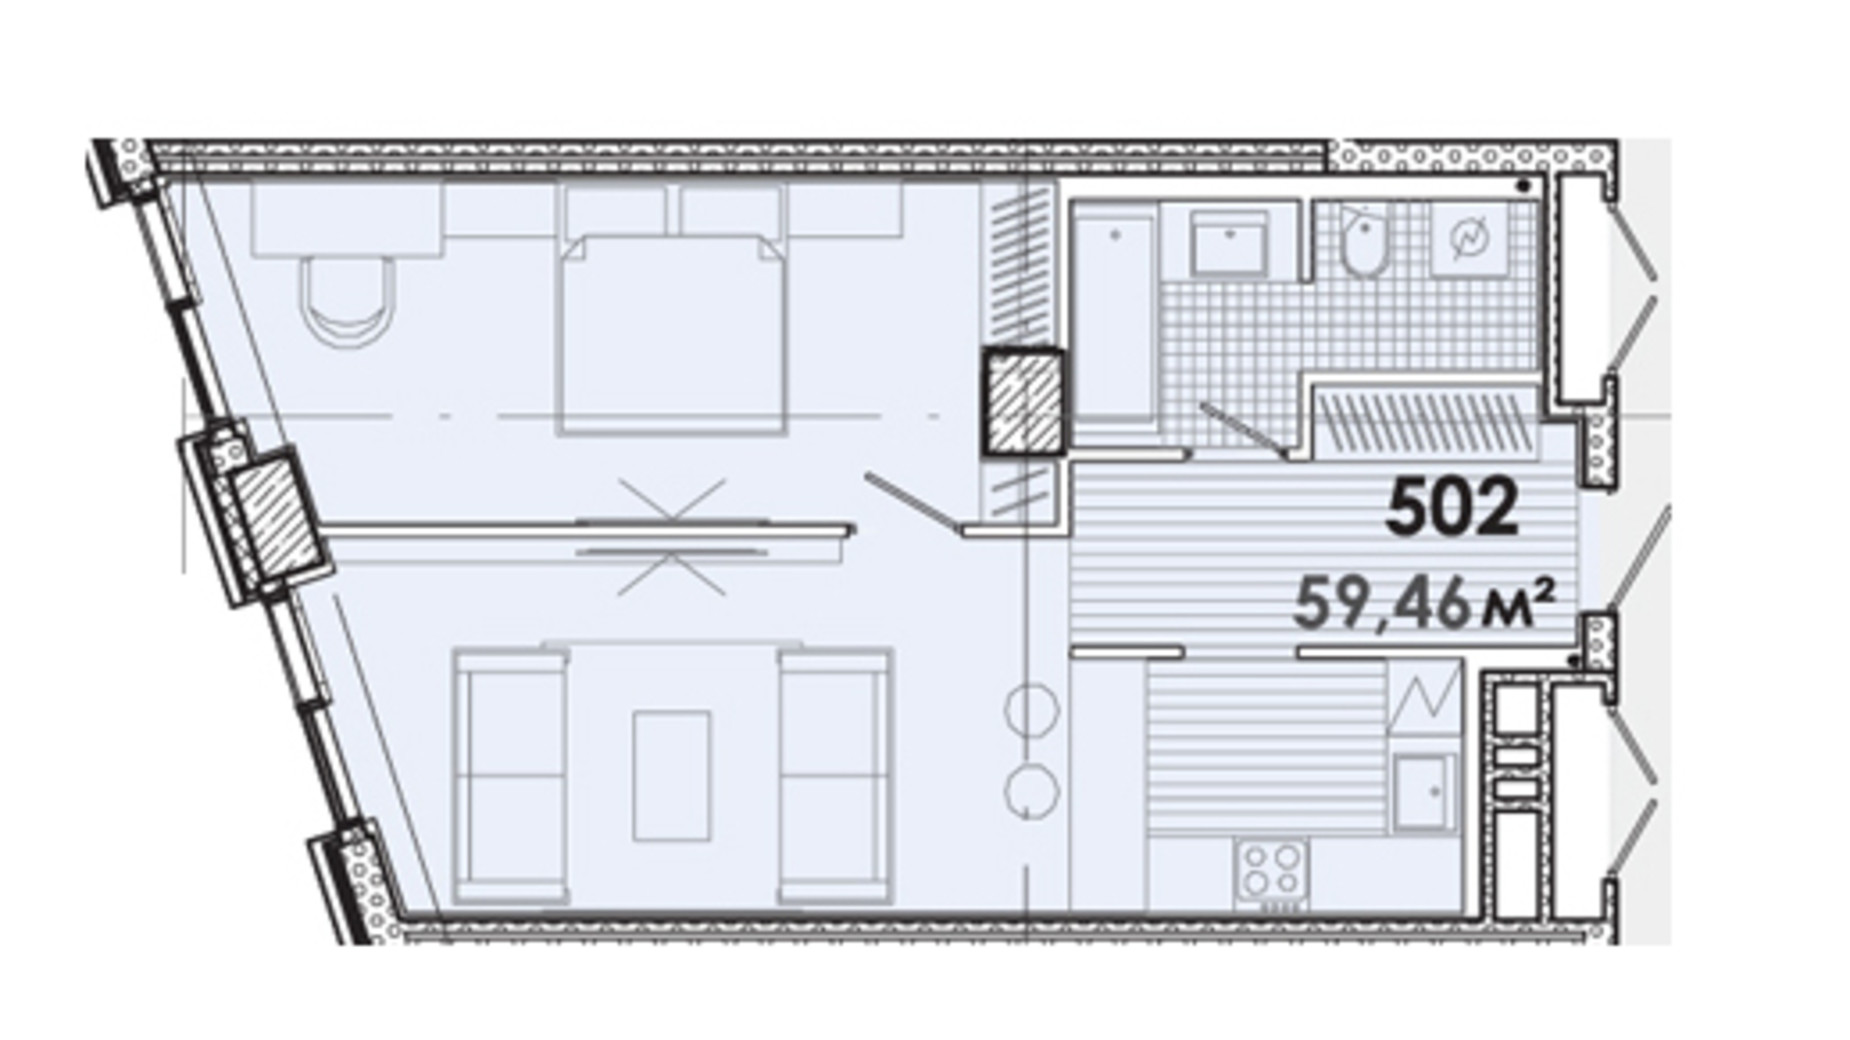 Планировка 1-комнатной квартиры в МФК Ermolaev Center 59.46 м², фото 507663